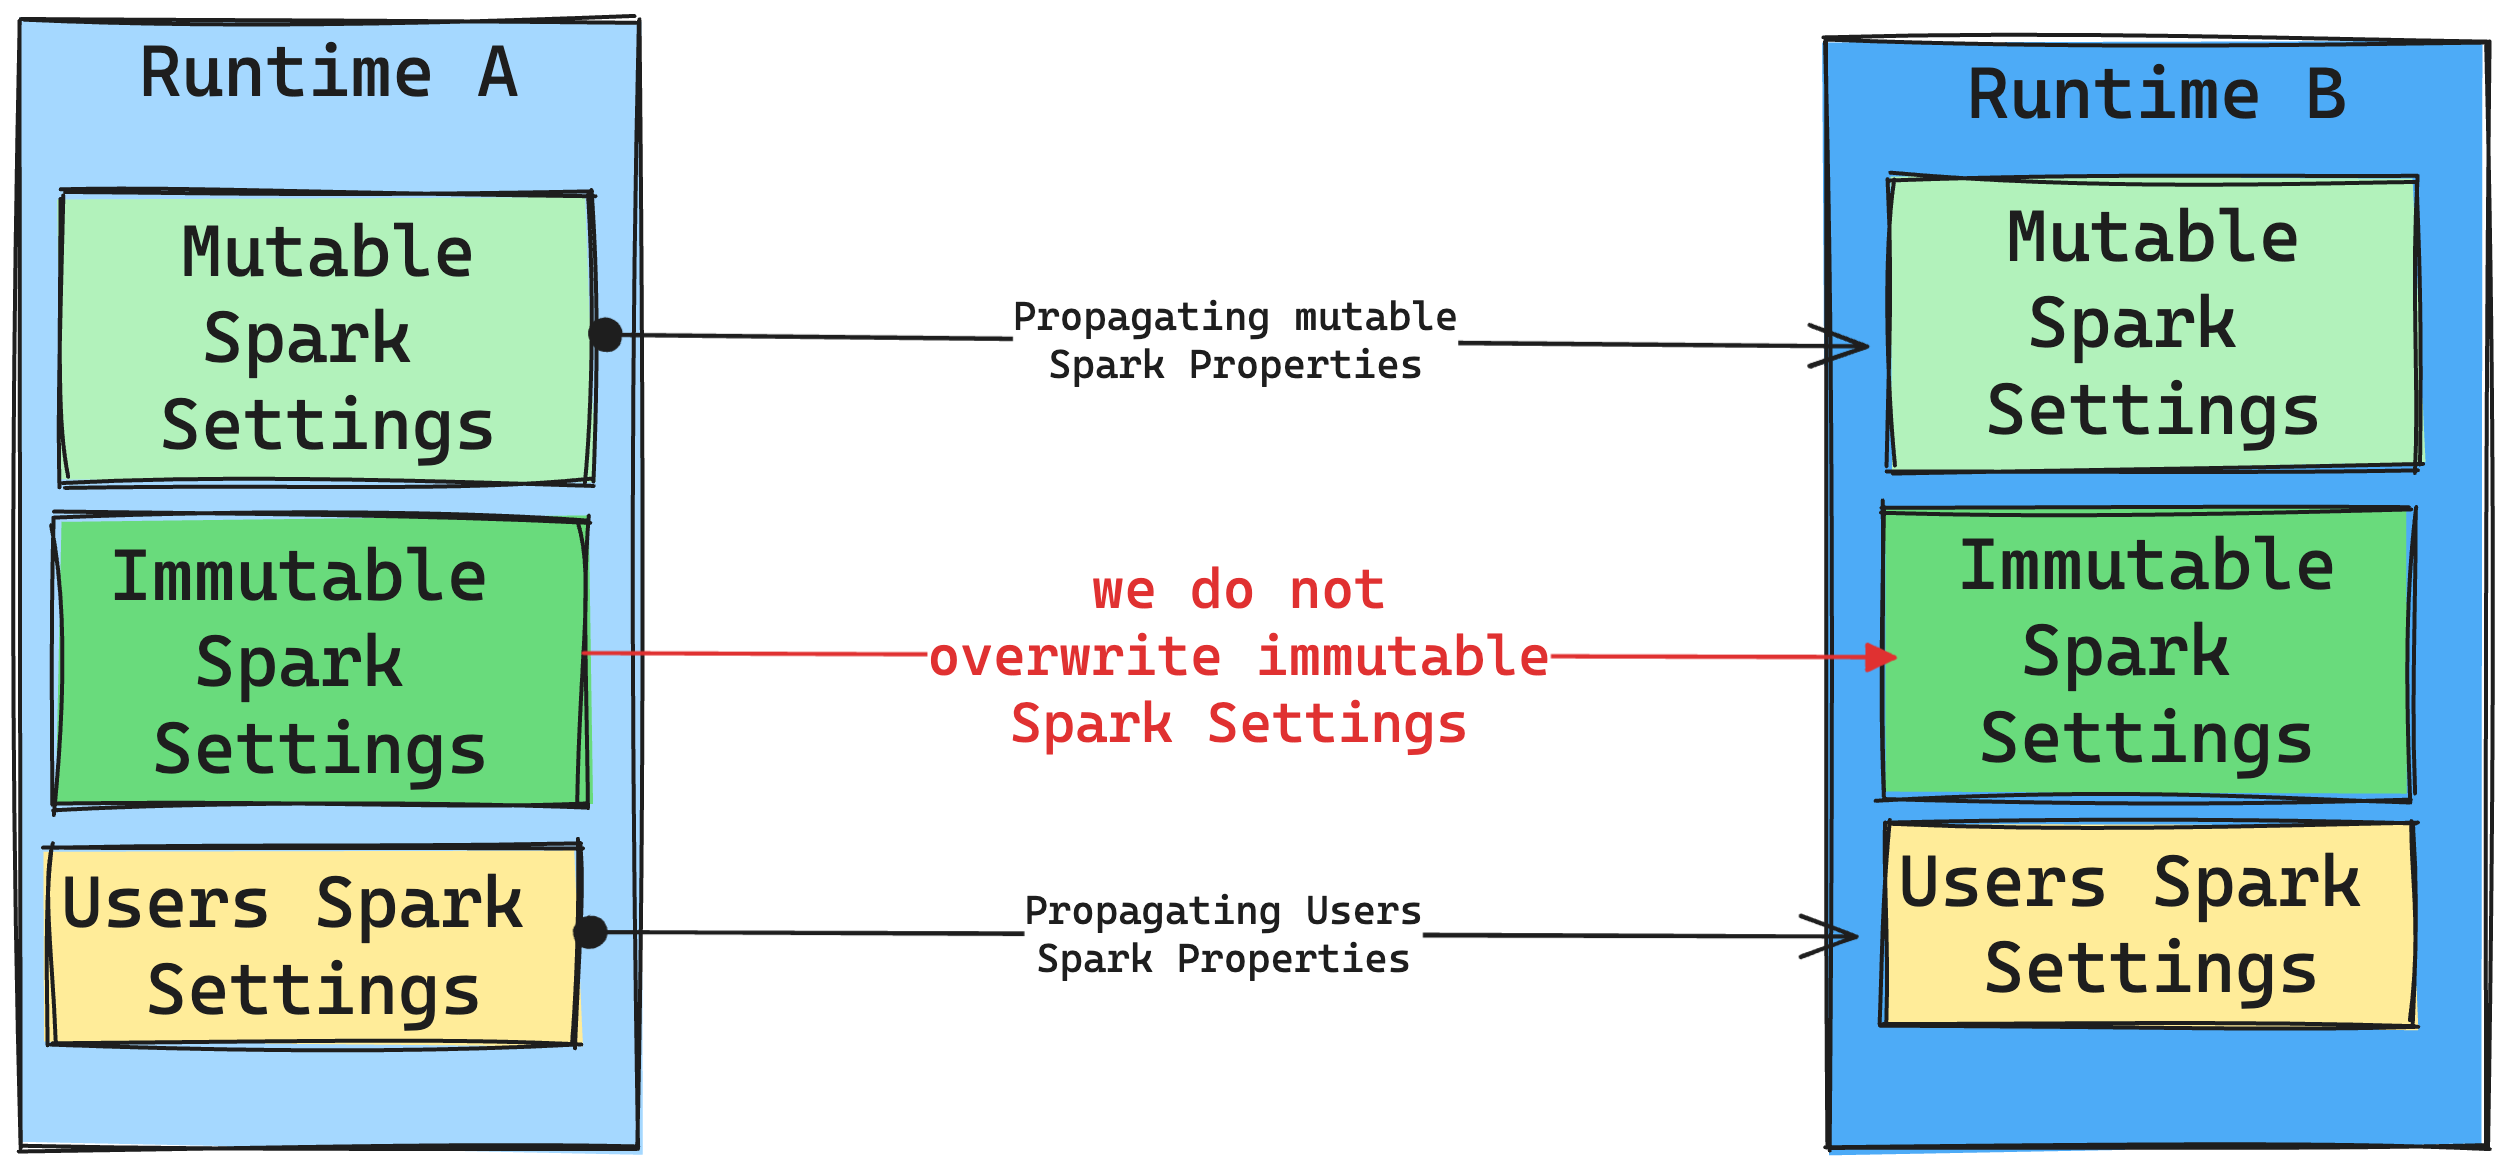 Cambio en tiempo de ejecución de configuración de Spark.